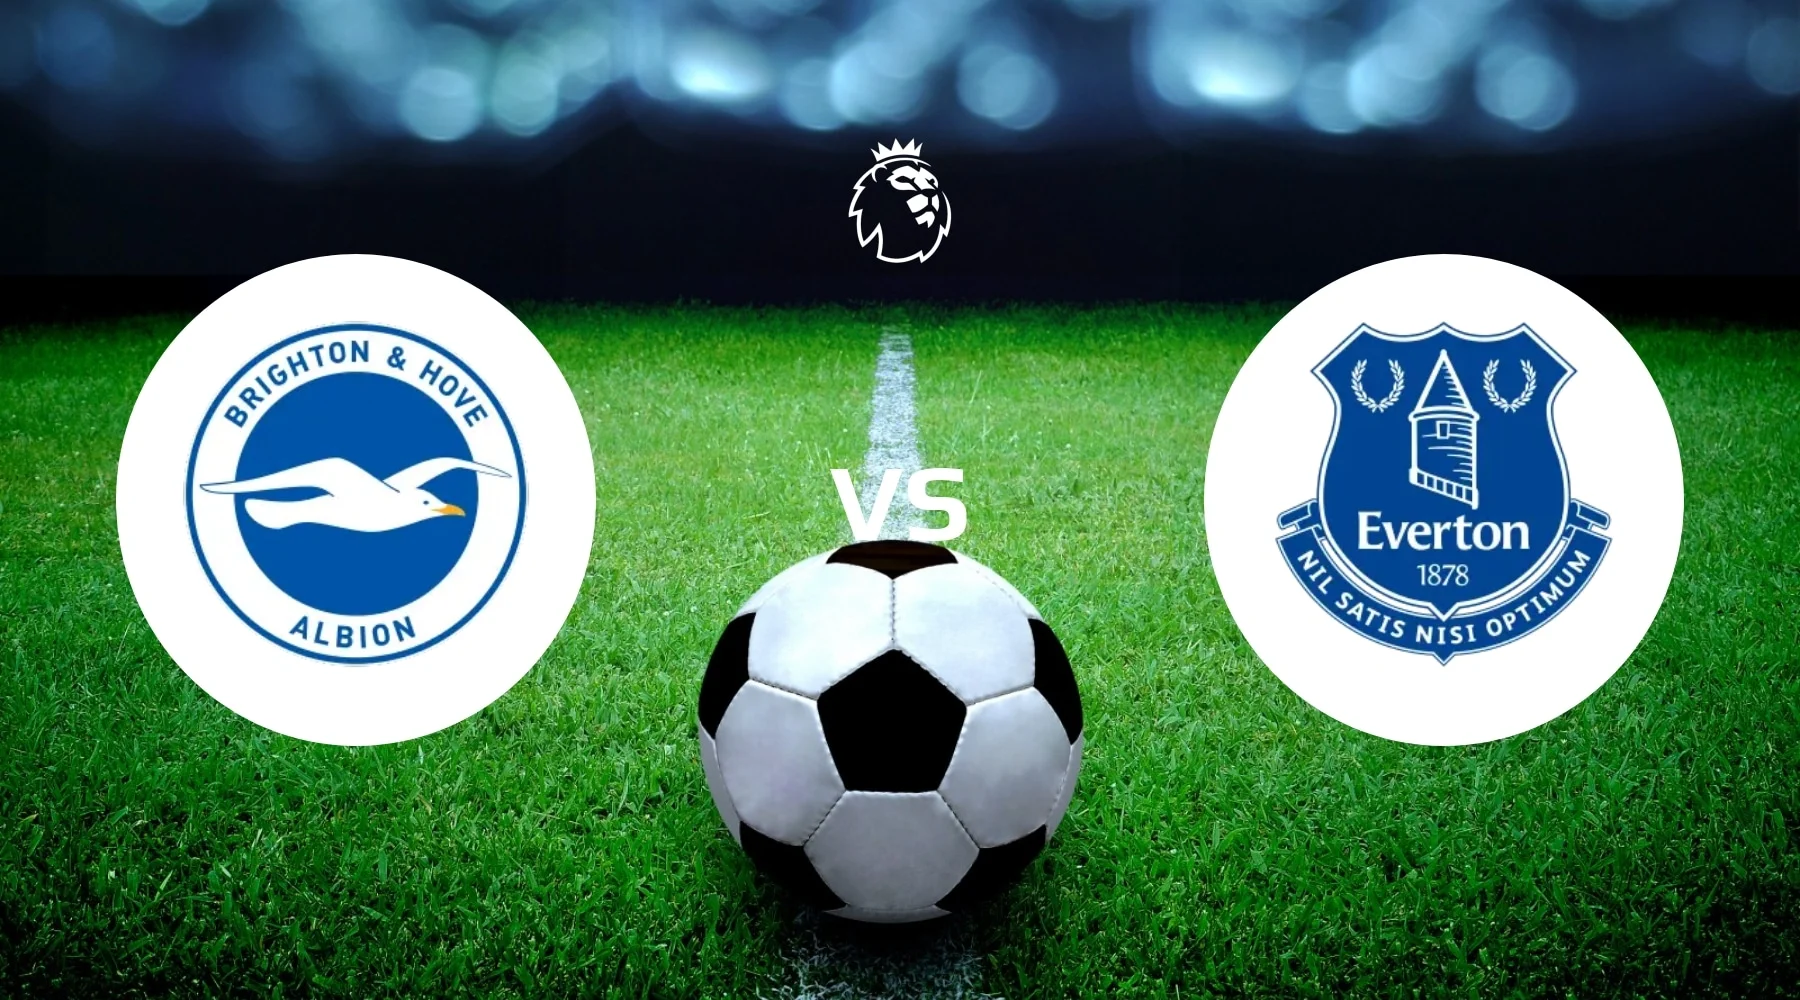 Brighton & Hove Albion vs Everton Betting Tips & Prediction